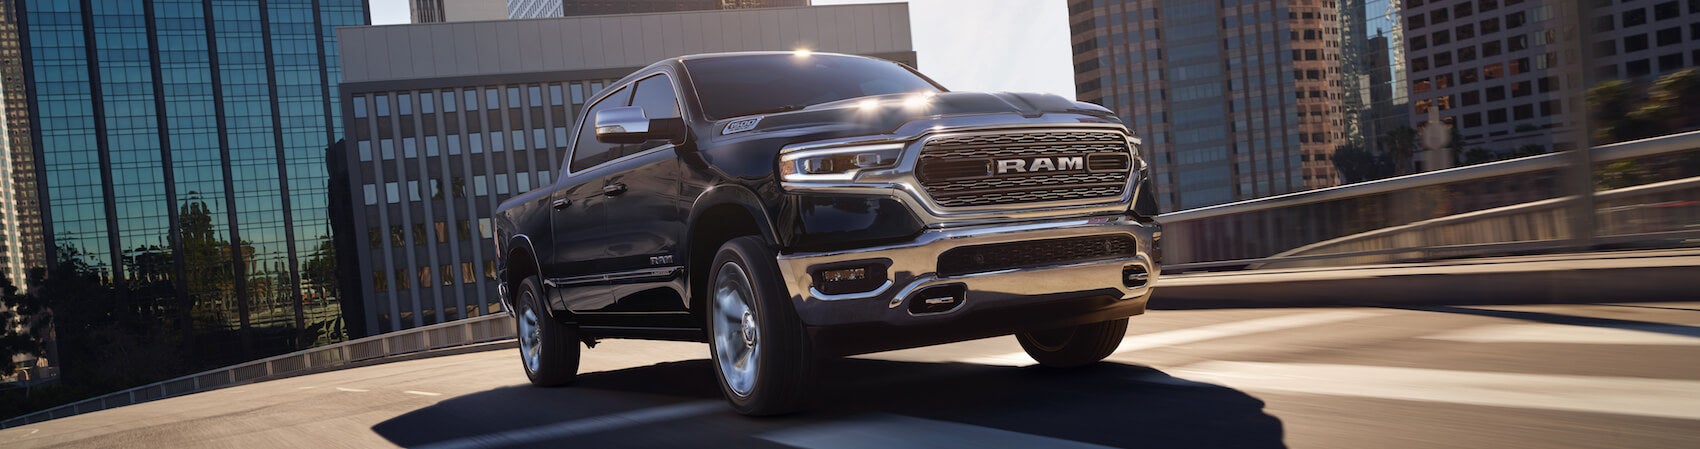 2020 Ram 1500 review Scranton, PA